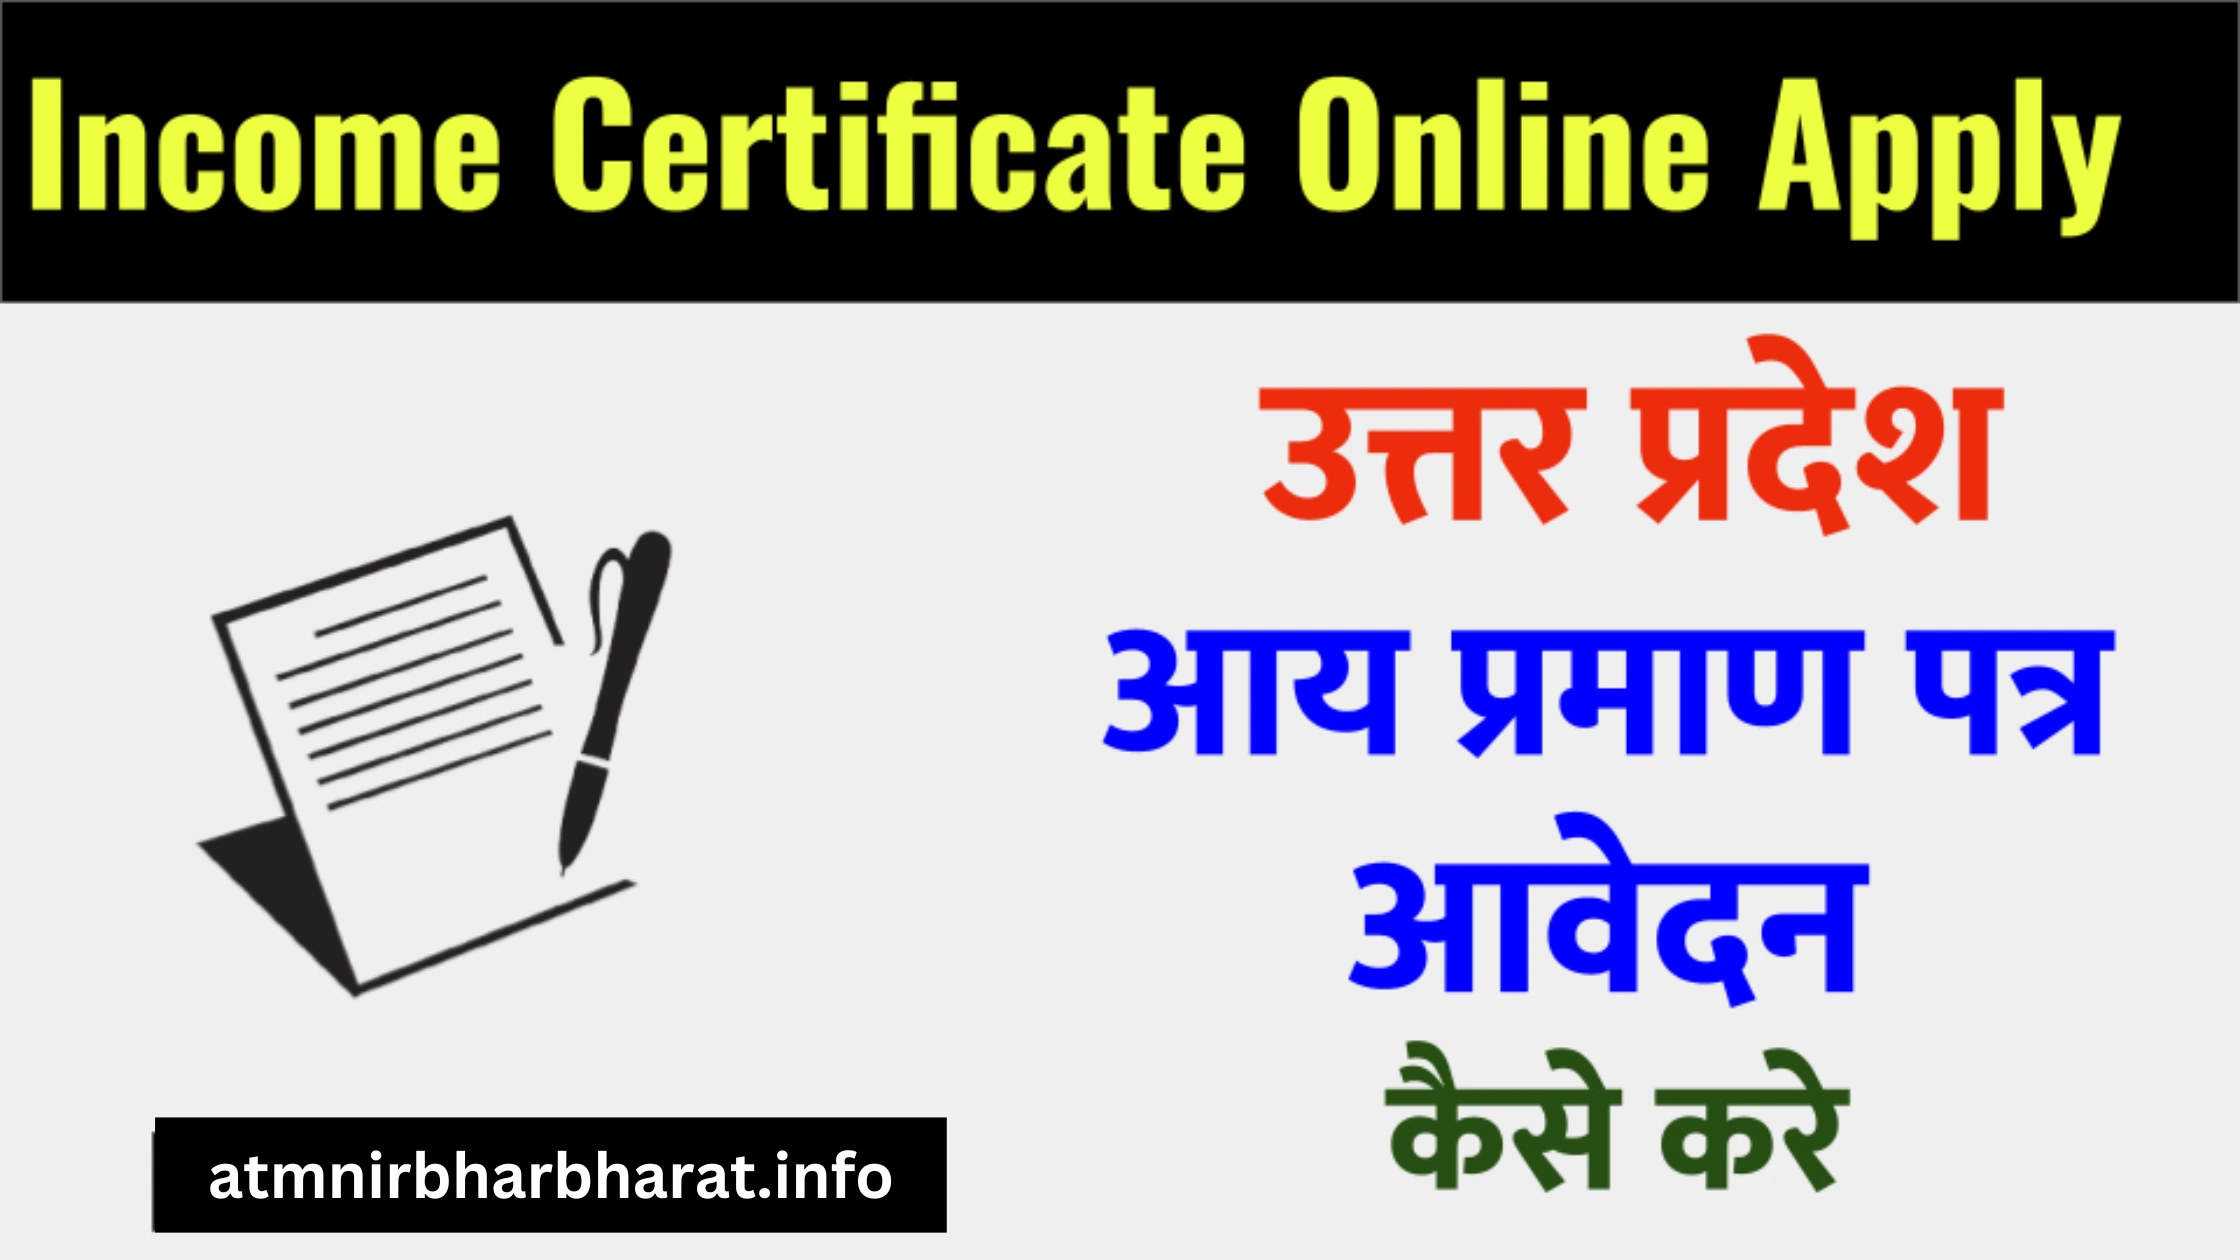 यूपी आय प्रमाण पत्र कैसे बनाएं (Income Certificate Uttar Pradesh)